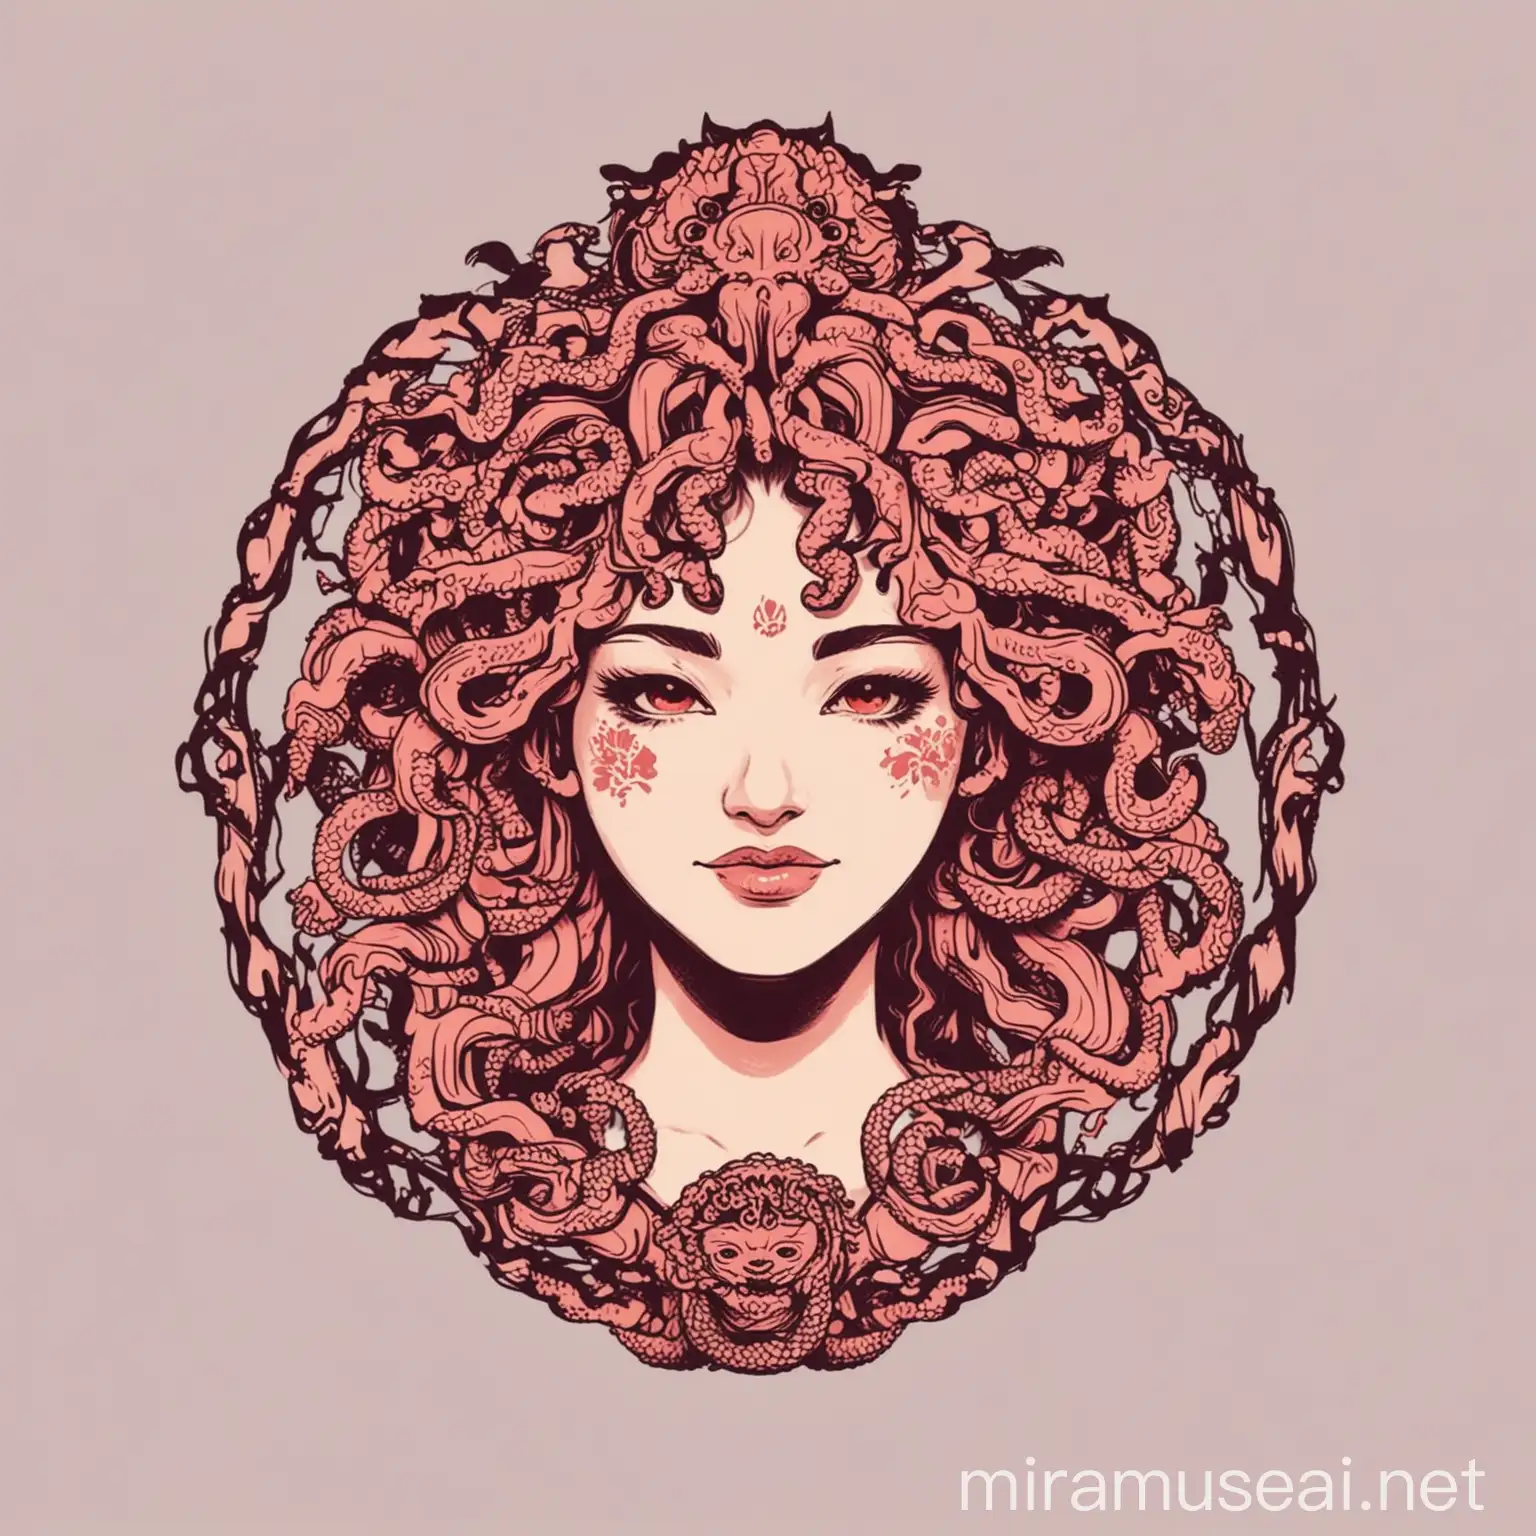 Sakura Color Gorgon Medusa Silhouette Minimalist Icon Design with a Smiling Twist